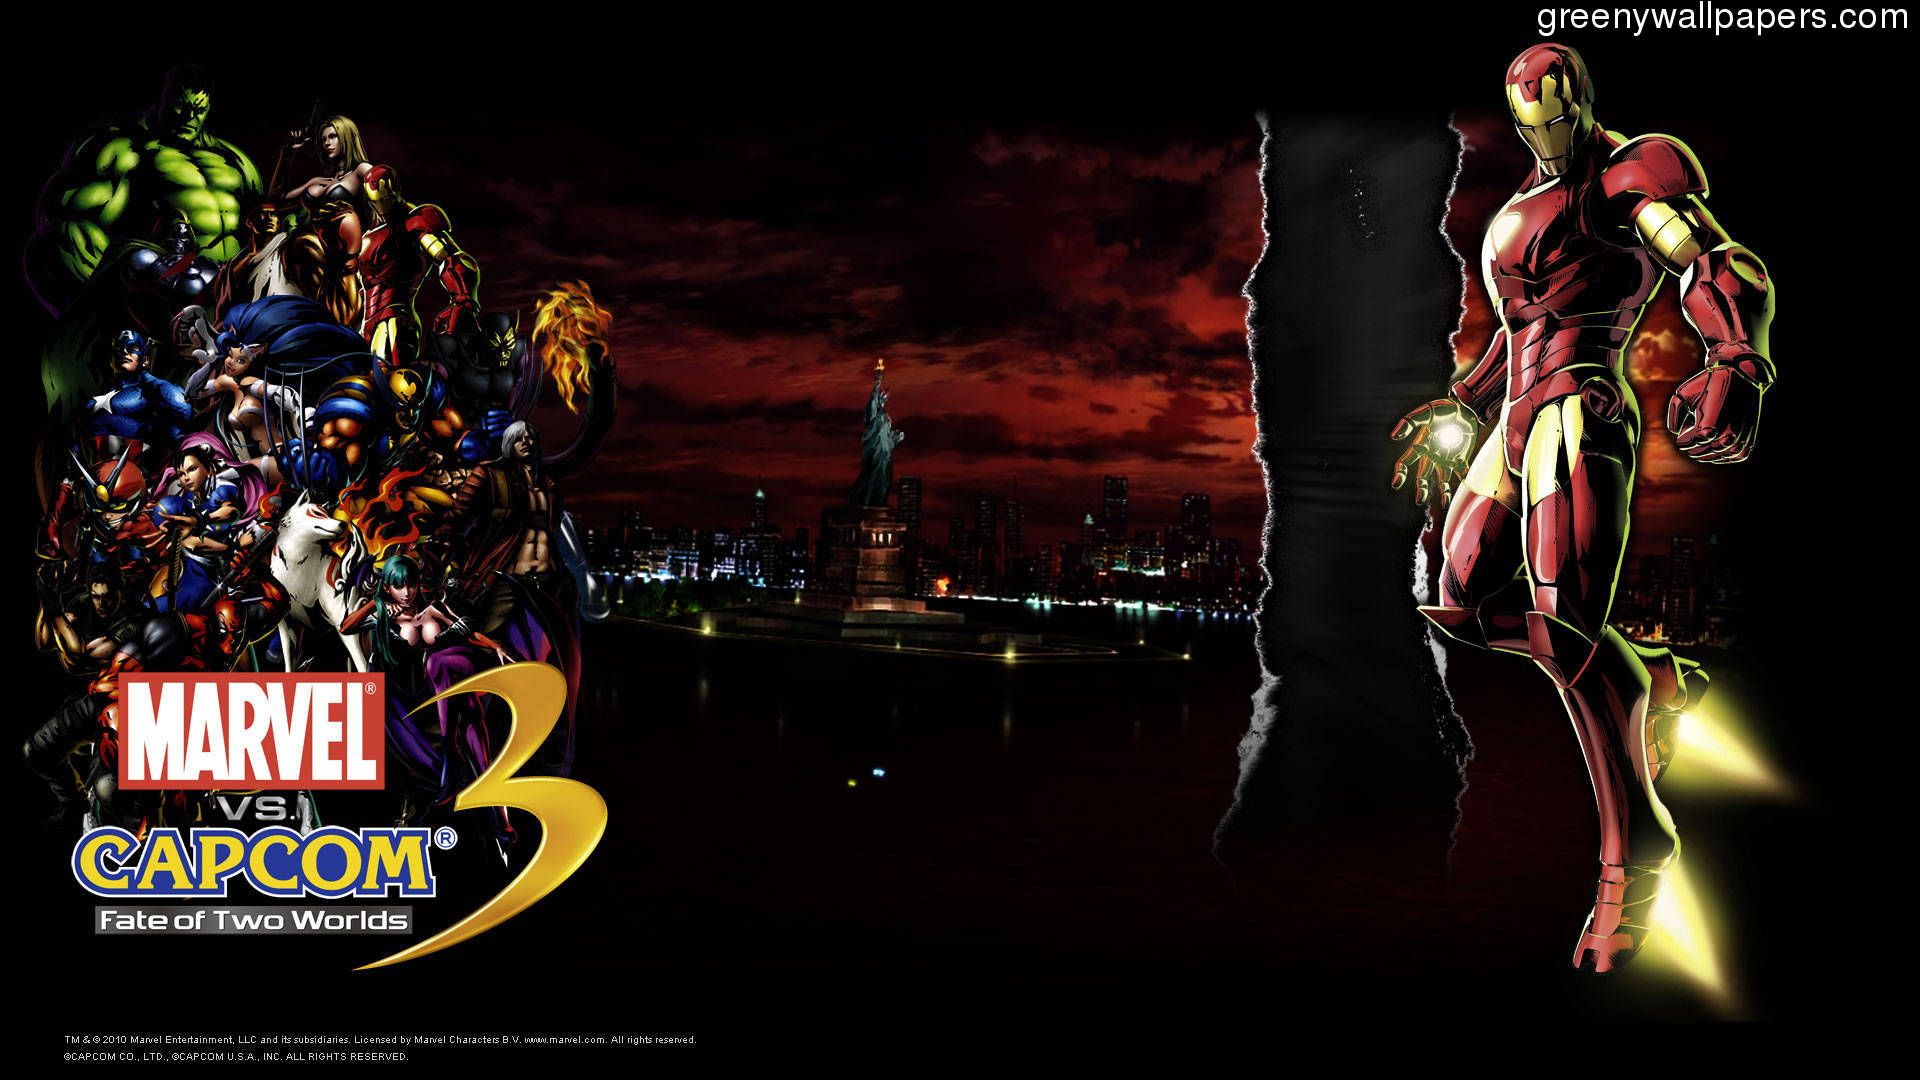 Download Marvel Vs Capcom 3 Iron Man 1920x1080 Wallpaper